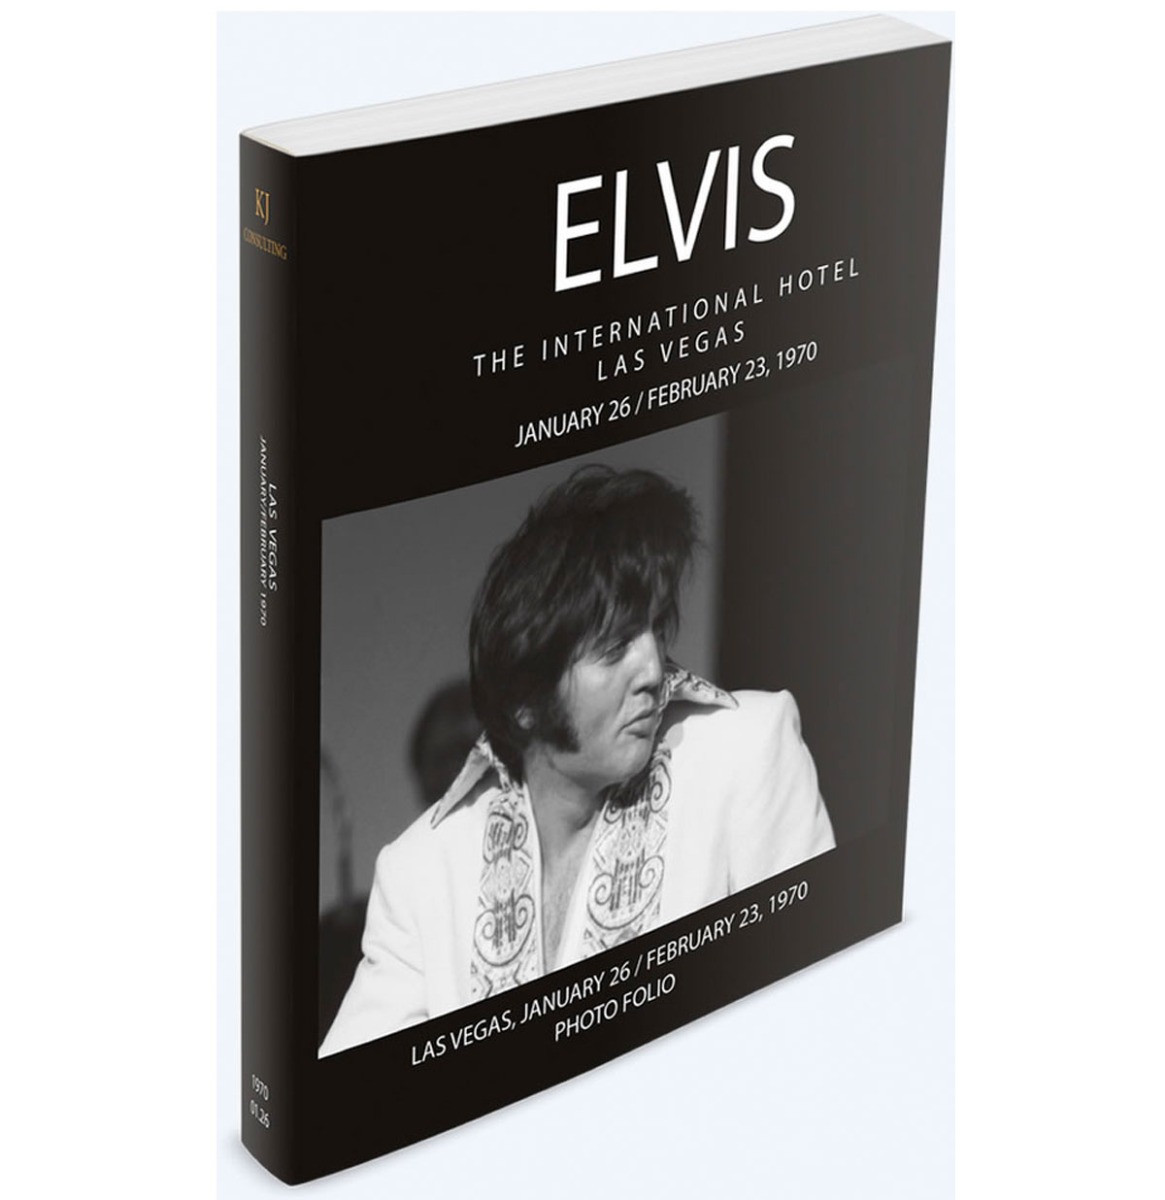 Elvis Presley at The International Hotel in Las Vegas, Jan-Feb., 1970 Softcover Boek